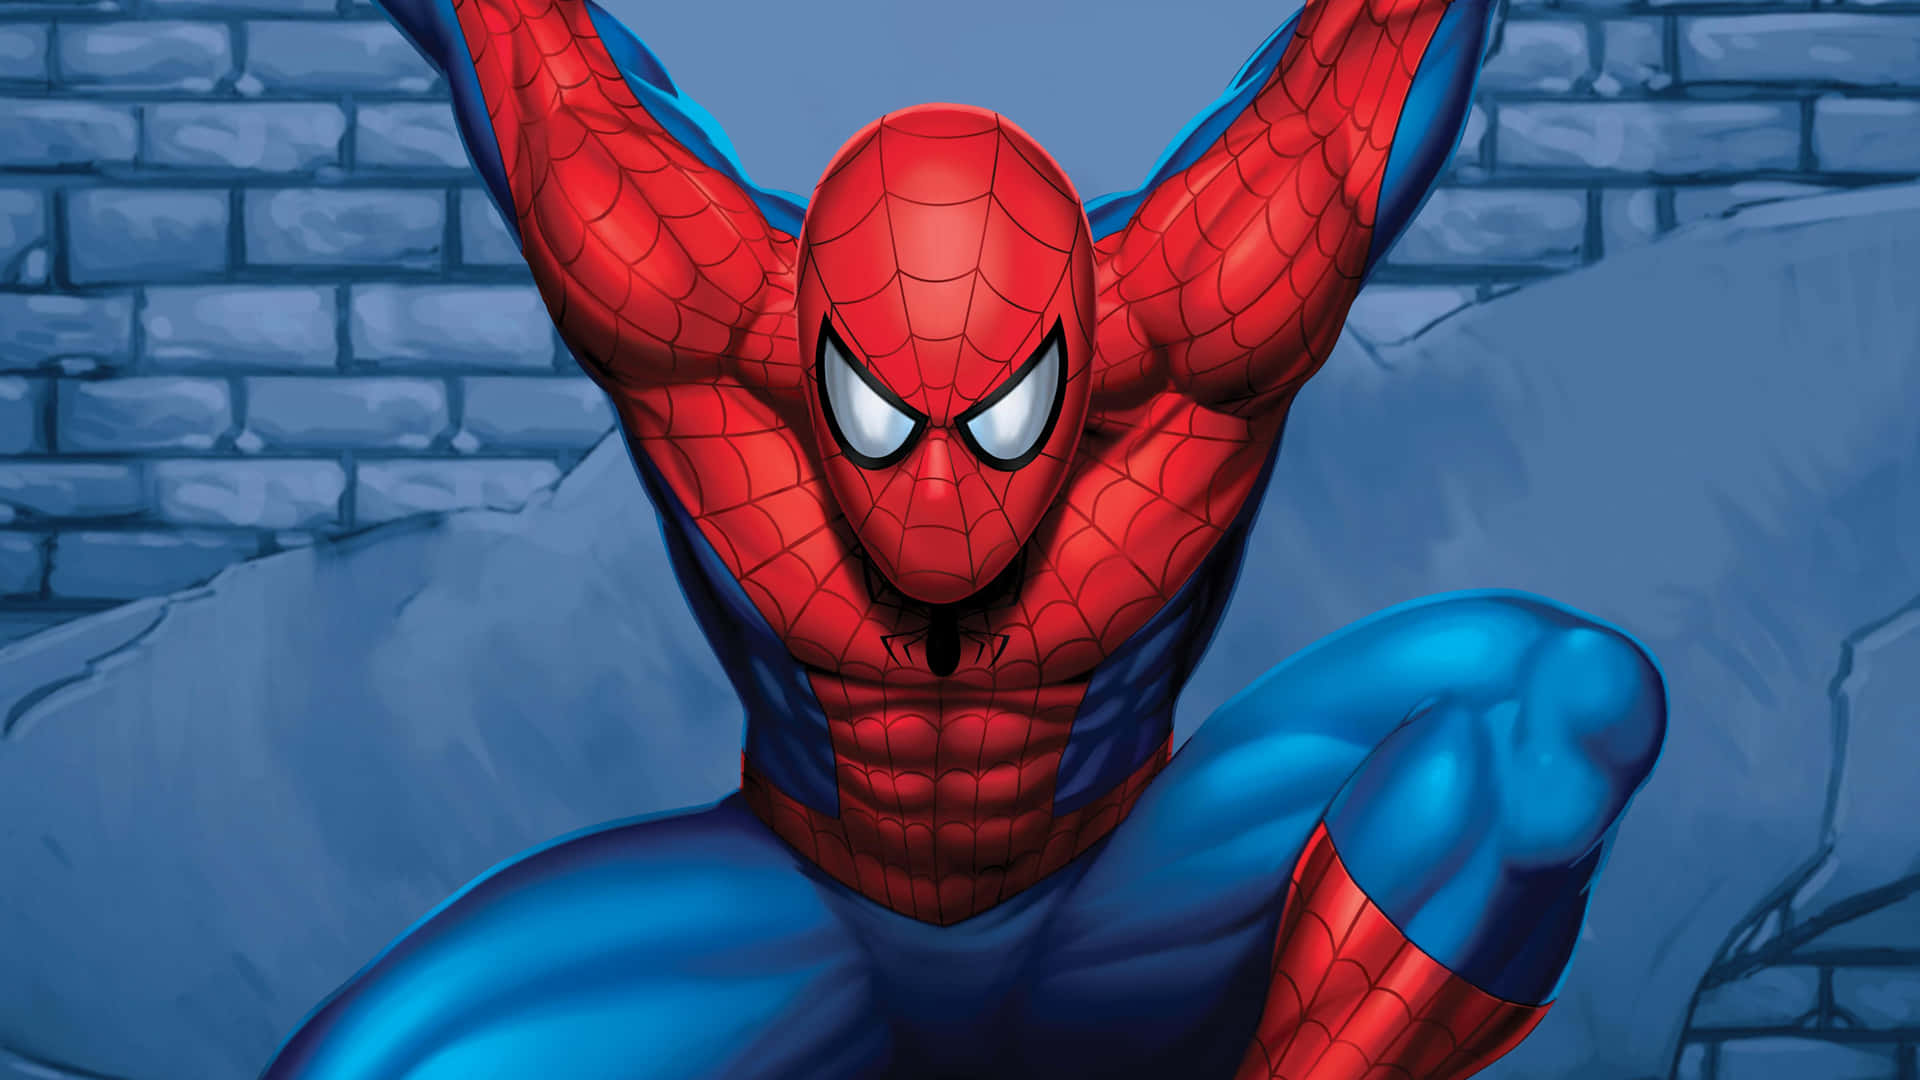 Spiderman Profilbild Aufgenommen Wallpaper